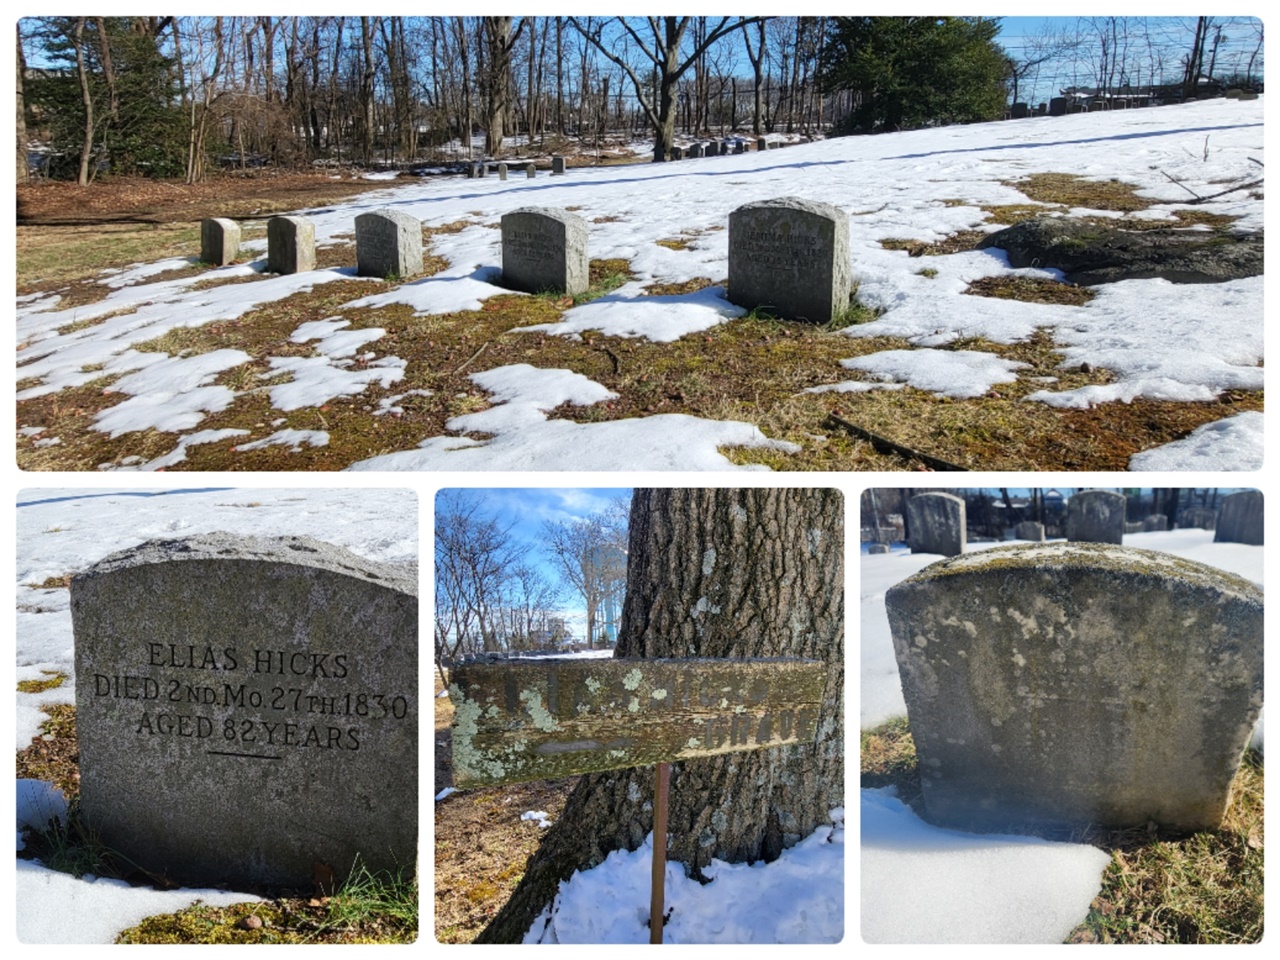 제리코 미팅하우스 곁의 공동묘지에는 제리코를 개척한 퀘이커 시먼스 일가를 비롯 힉스 가족들의 묘소도 함께 있다. 엘리아스 힉스 부부와 가족이 묘지 앞쪽에 나란히 영면에 들어있다. 오래된 표지판이 희미하게 그의 무덤이 있는 자리라고 알려주고 있다. 아마도 근간에 다시 새겨진 듯한 엘리아스 힉스 가족의 묘비와 달리 세월에 닳아 잘 알아볼 수 없는 발렌타인 힉스 가족을 찾느라 꽤 애를 먹었다. 